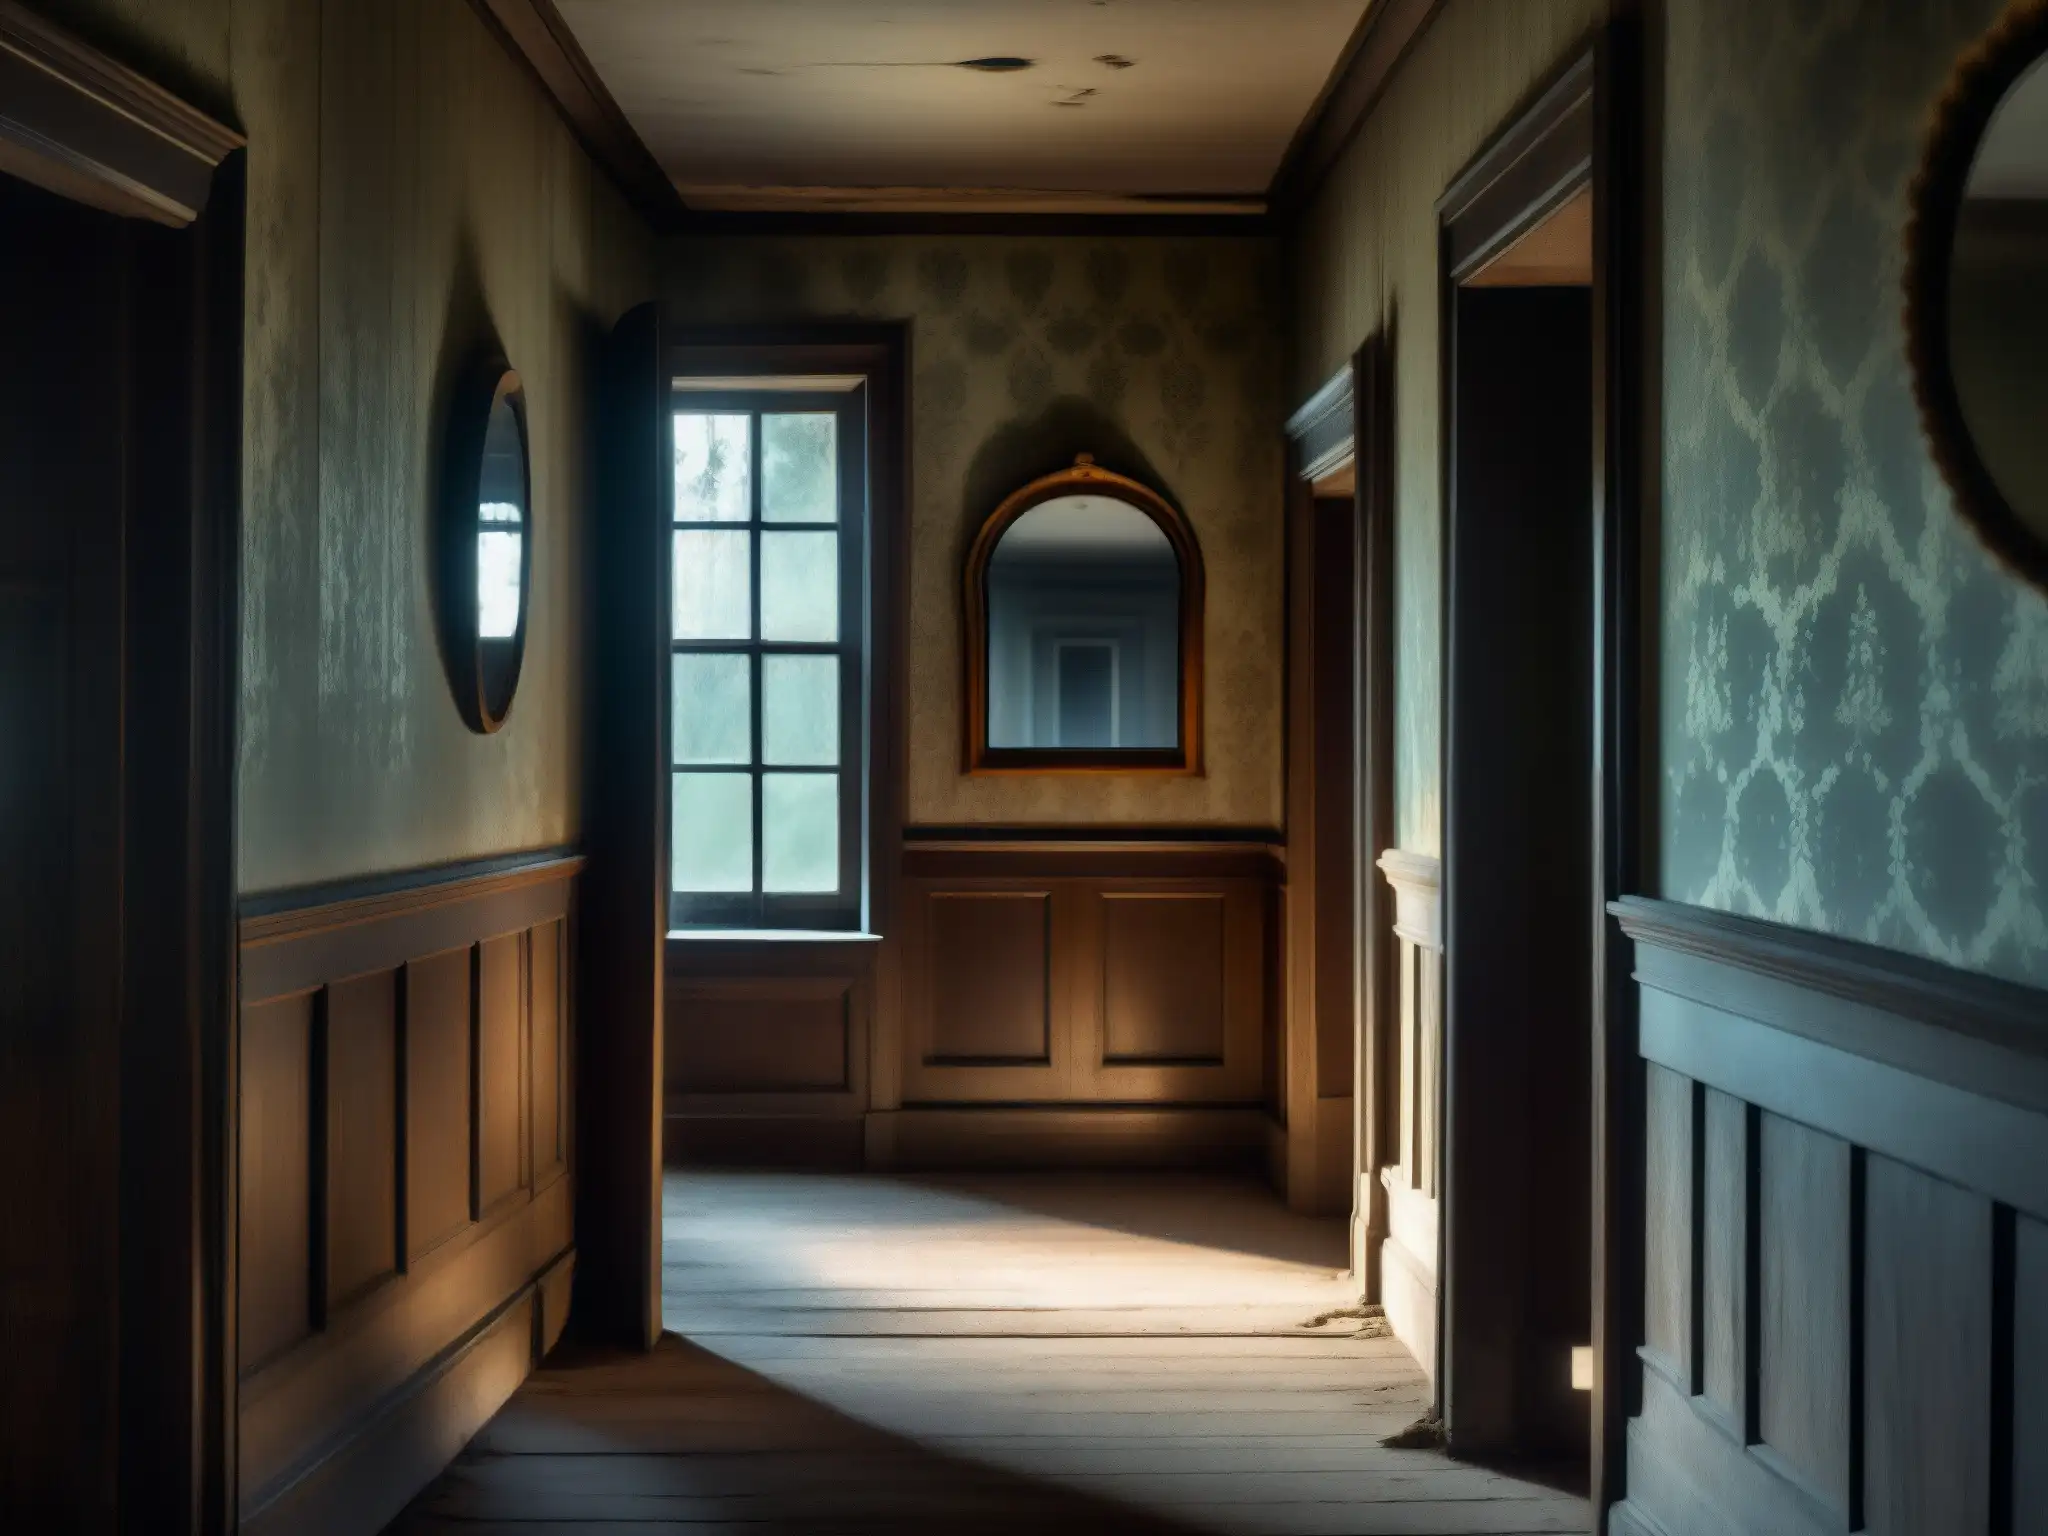 Un pasillo abandonado en una mansión antigua, con un espejo que refleja una figura fantasmal